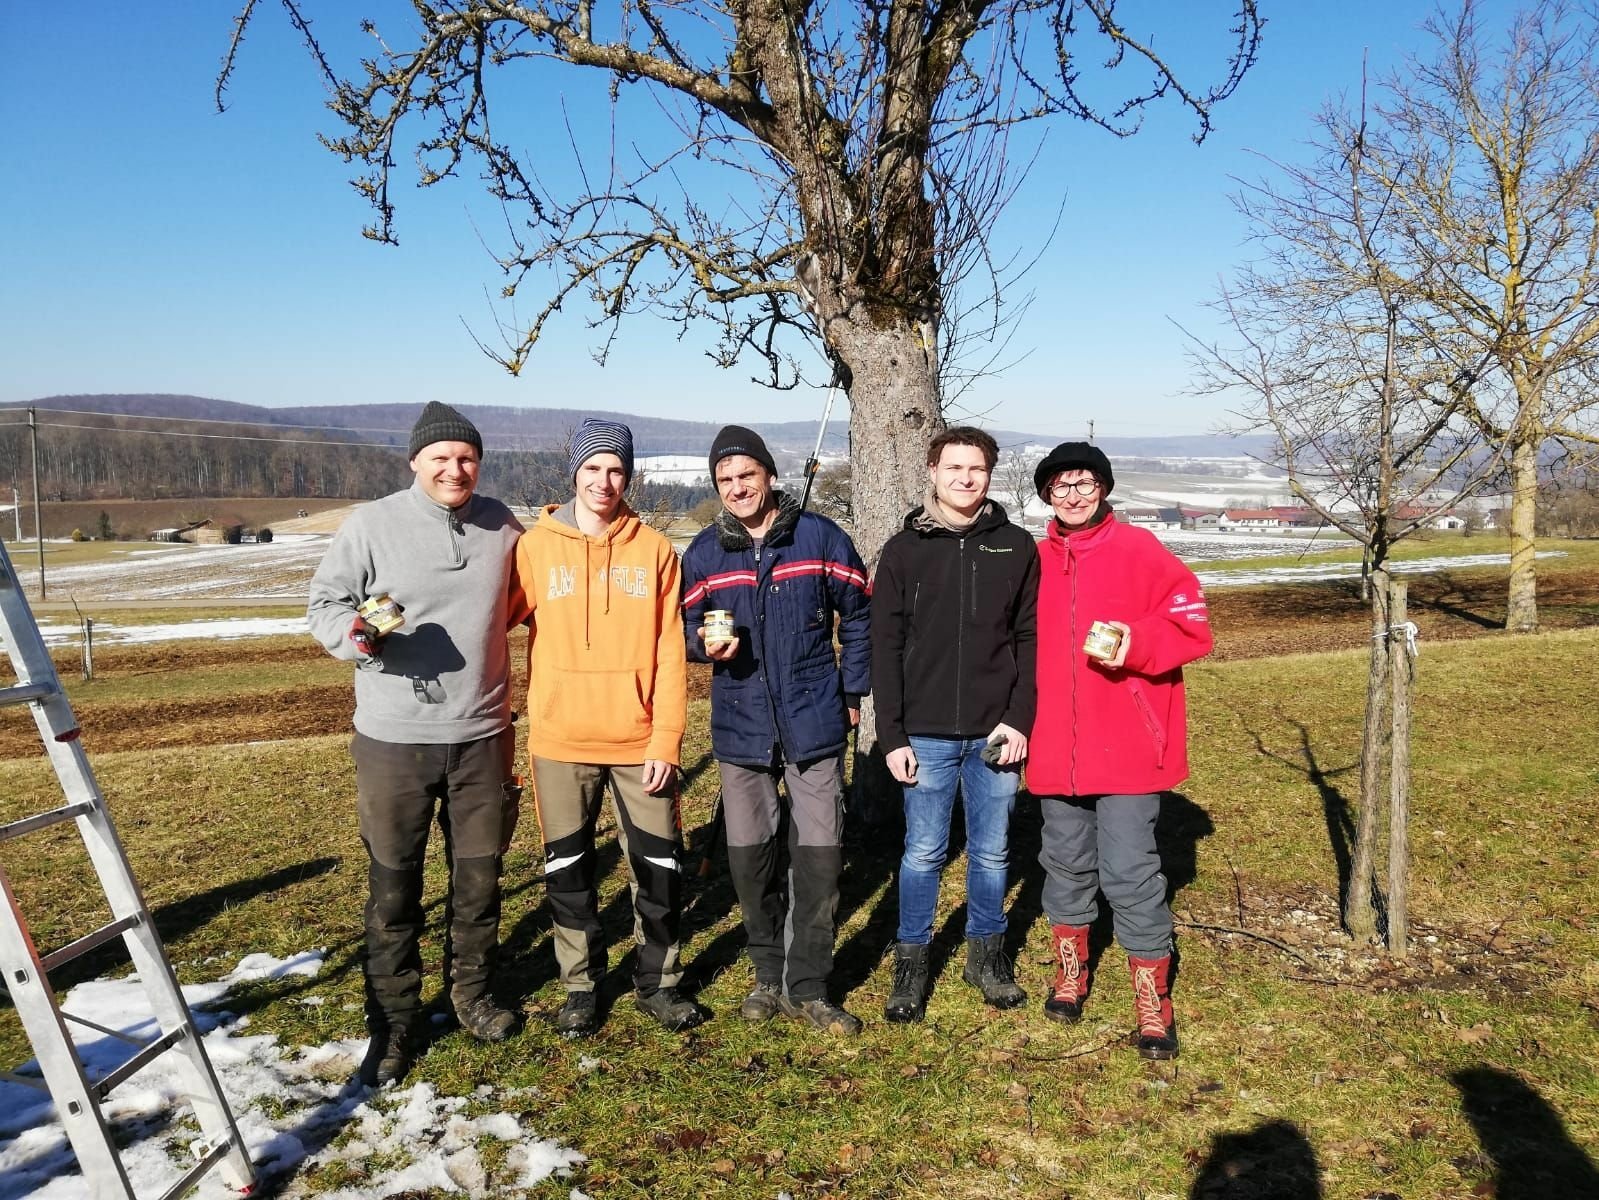 ProNatur Baumschnittkurs Mundingen Frühjahr 2019: Gruppenbild von fünf Personen vor einem Baum